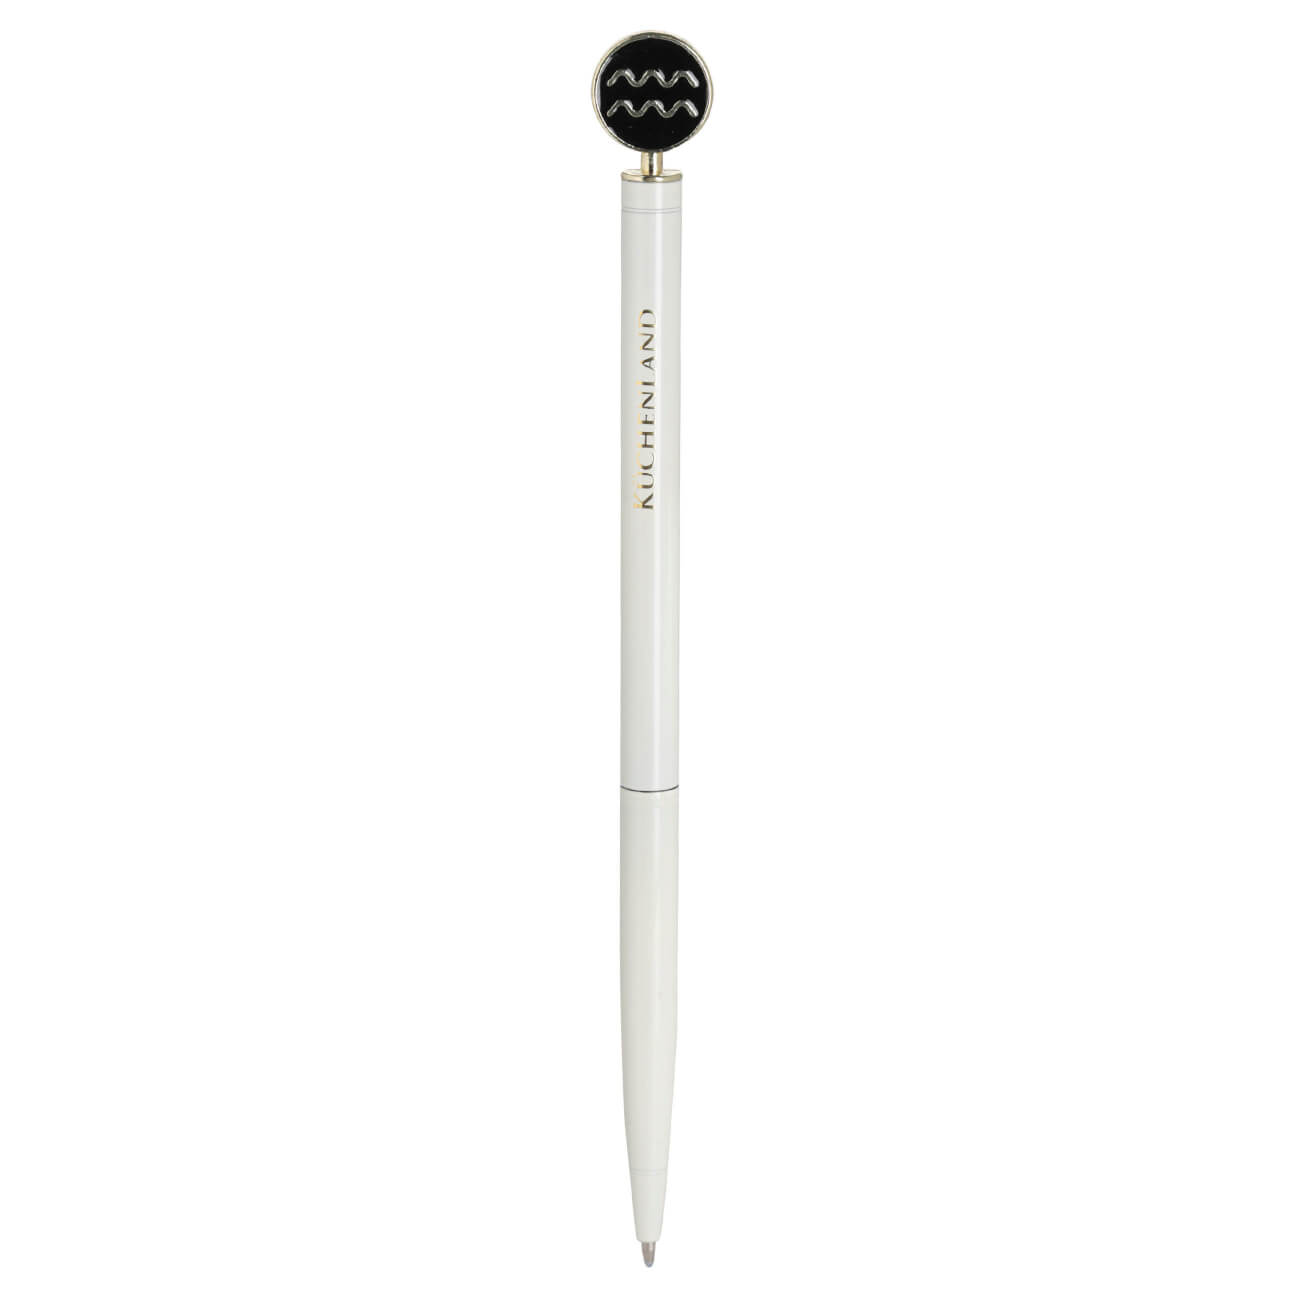 Ручка шариковая, 15 см, с фигуркой, сталь, молочно-золотистая, Водолей, Zodiac ручка скоба cappio pc183 96 мм бронза